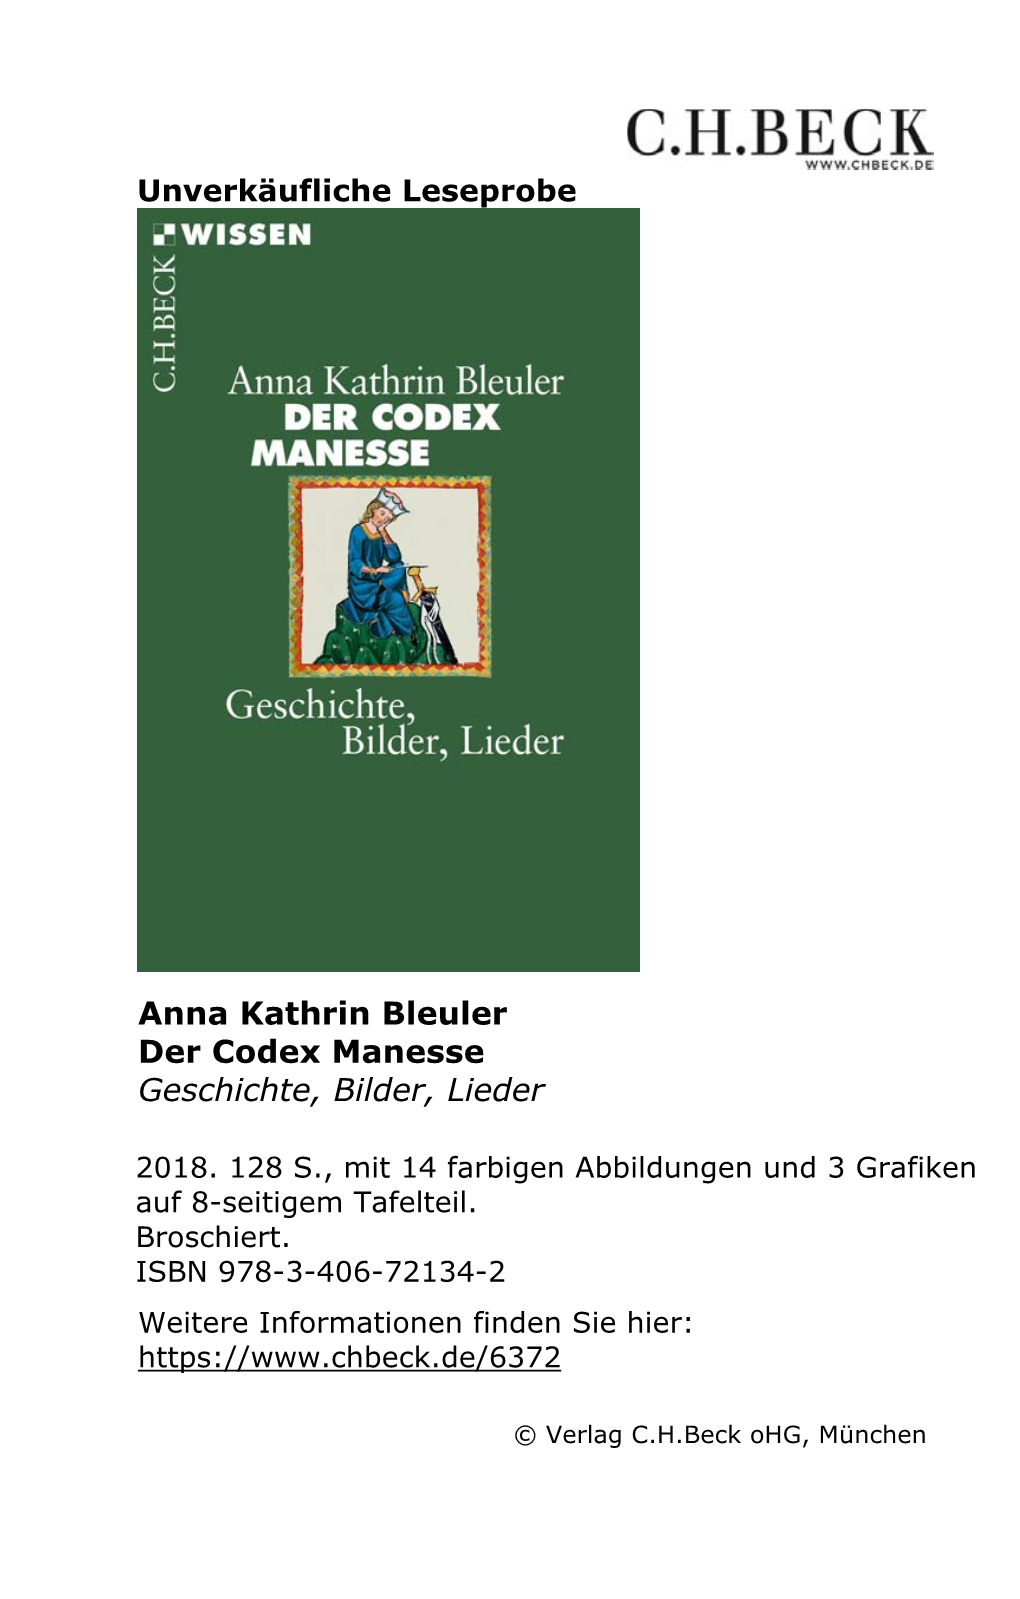 Der Codex Manesse Geschichte, Bilder, Lieder